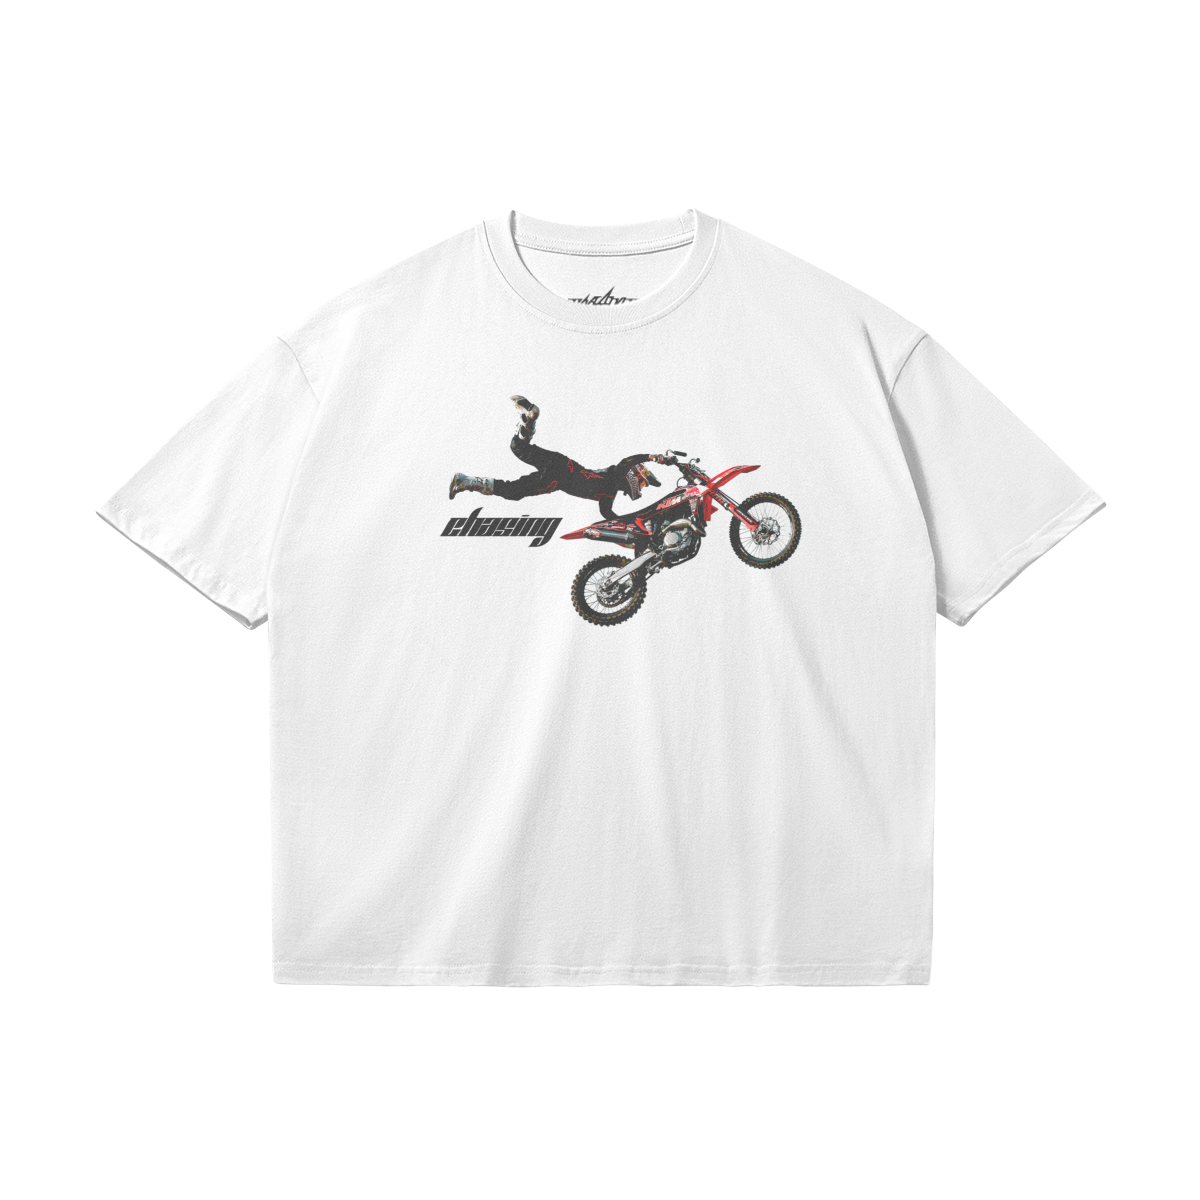 Speed T-shirt